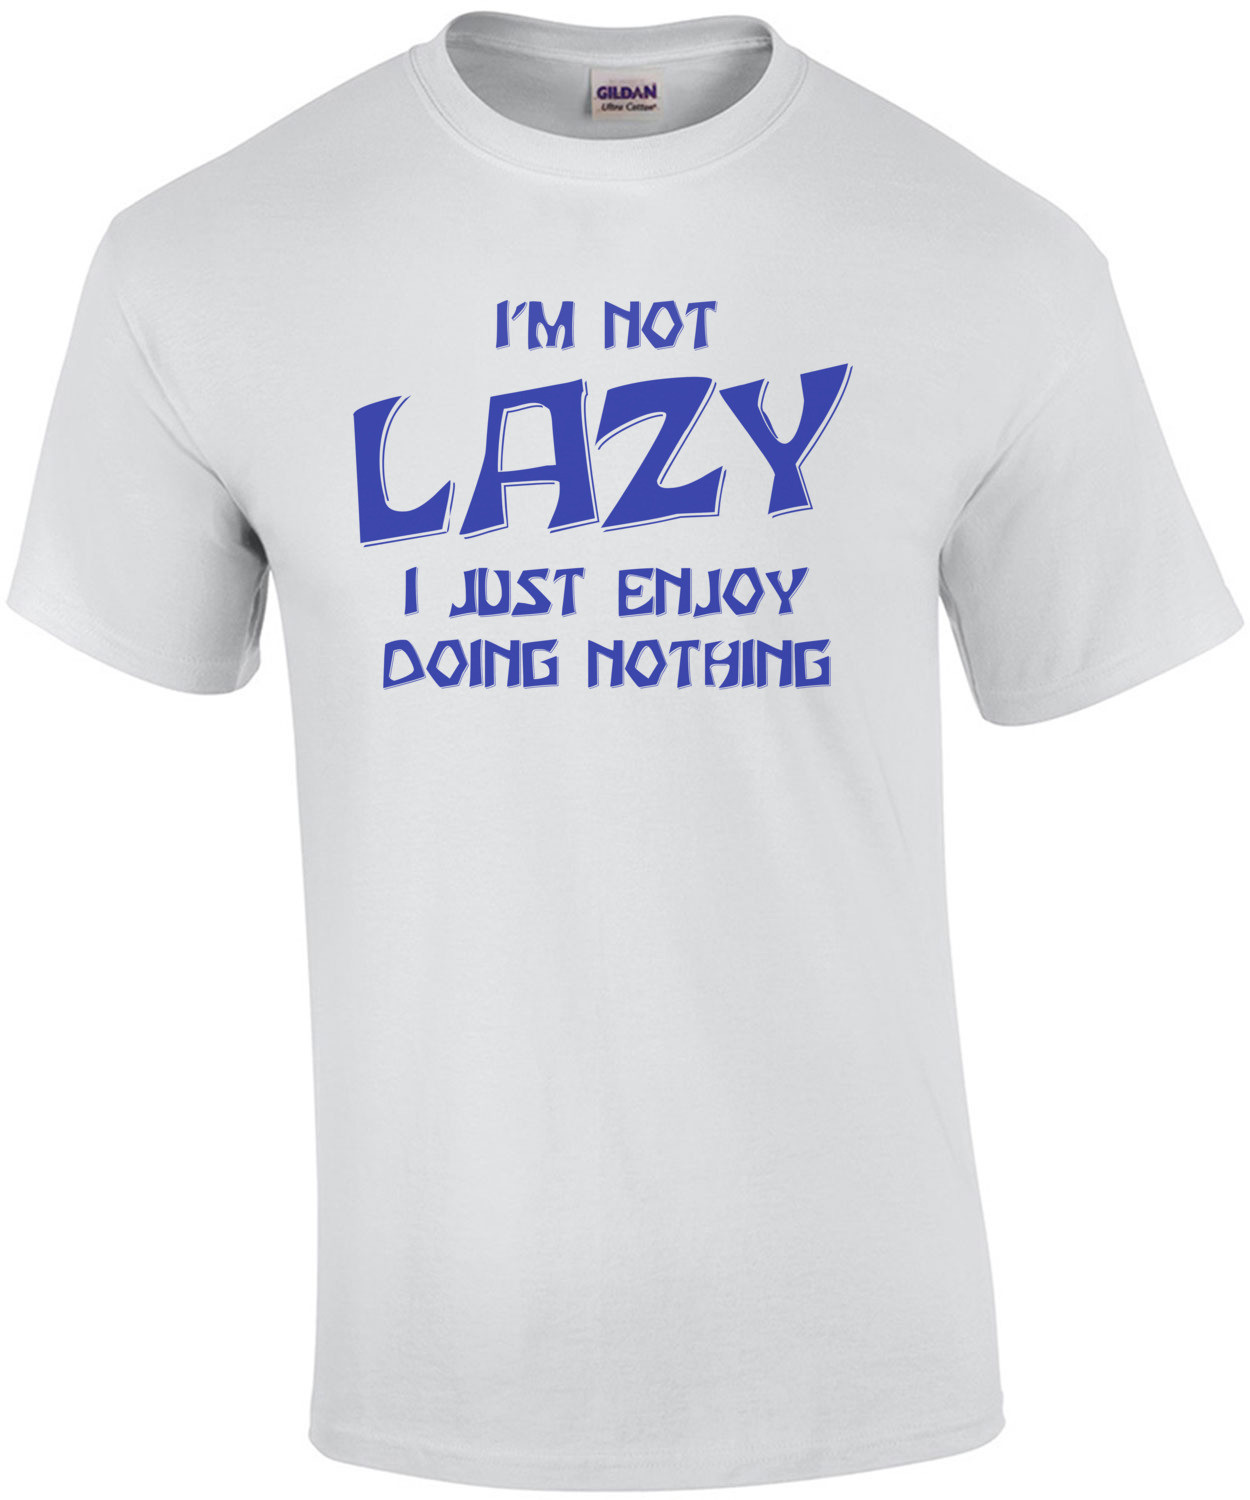 I'm Not Lazy... I Enjoy Doing Nothing! T-Shirt